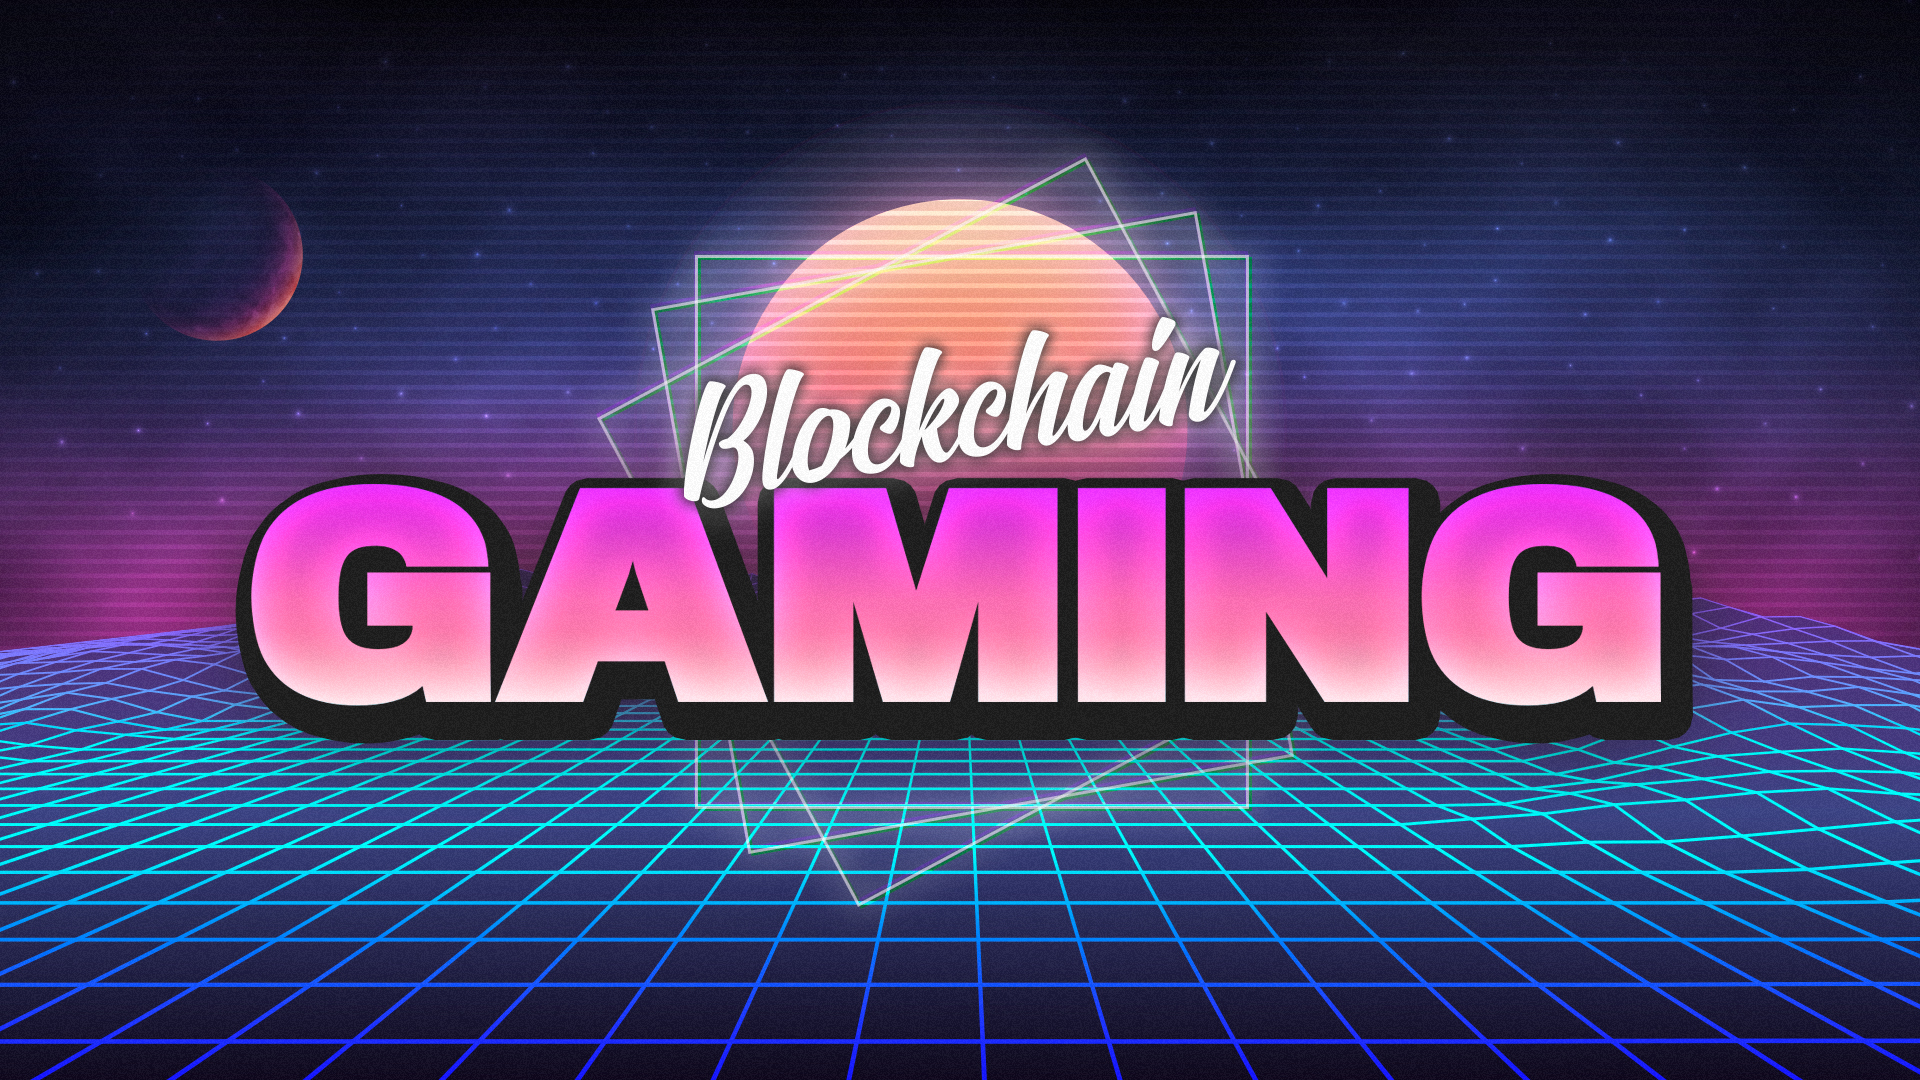 Blockchain Gaming გაიზარდა 2000%-ით 2021 წლიდან, მიუხედავად შემცირებული ინტერესისა